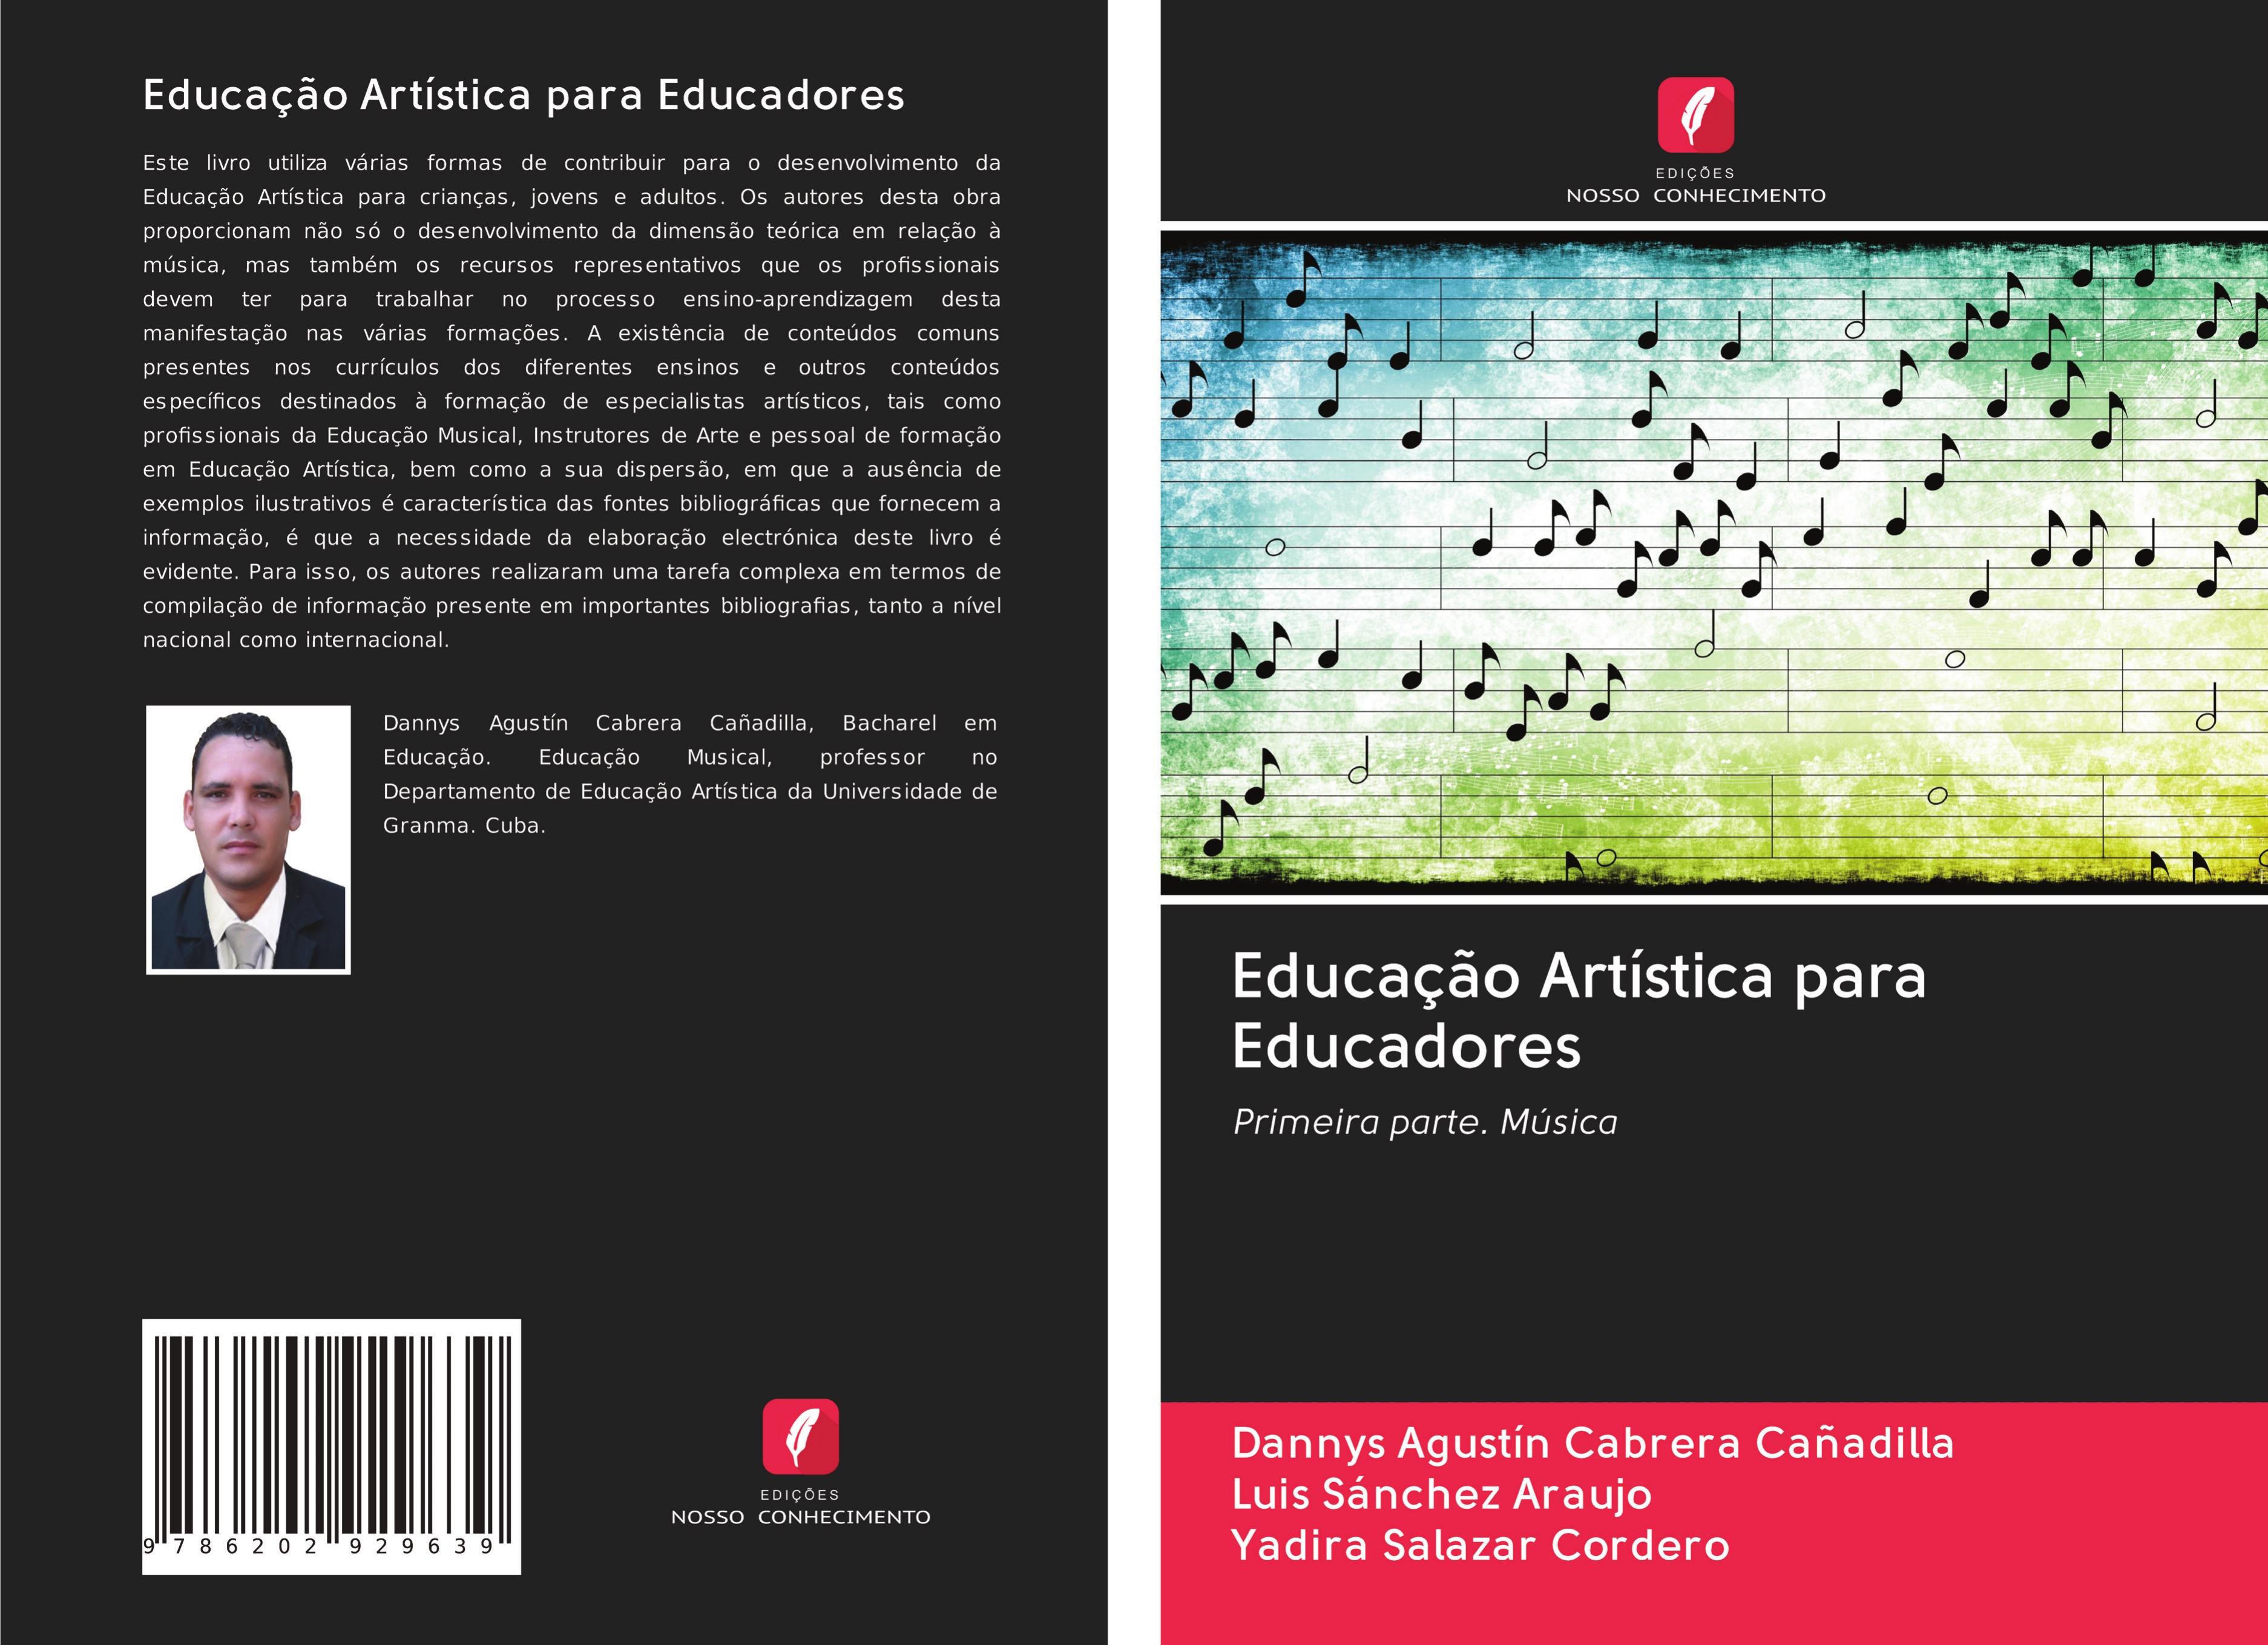 Educação Artística para Educadores - Cabrera Cañadilla, Dannys Agustín Sánchez Araujo, Luis Salazar Cordero, Yadira